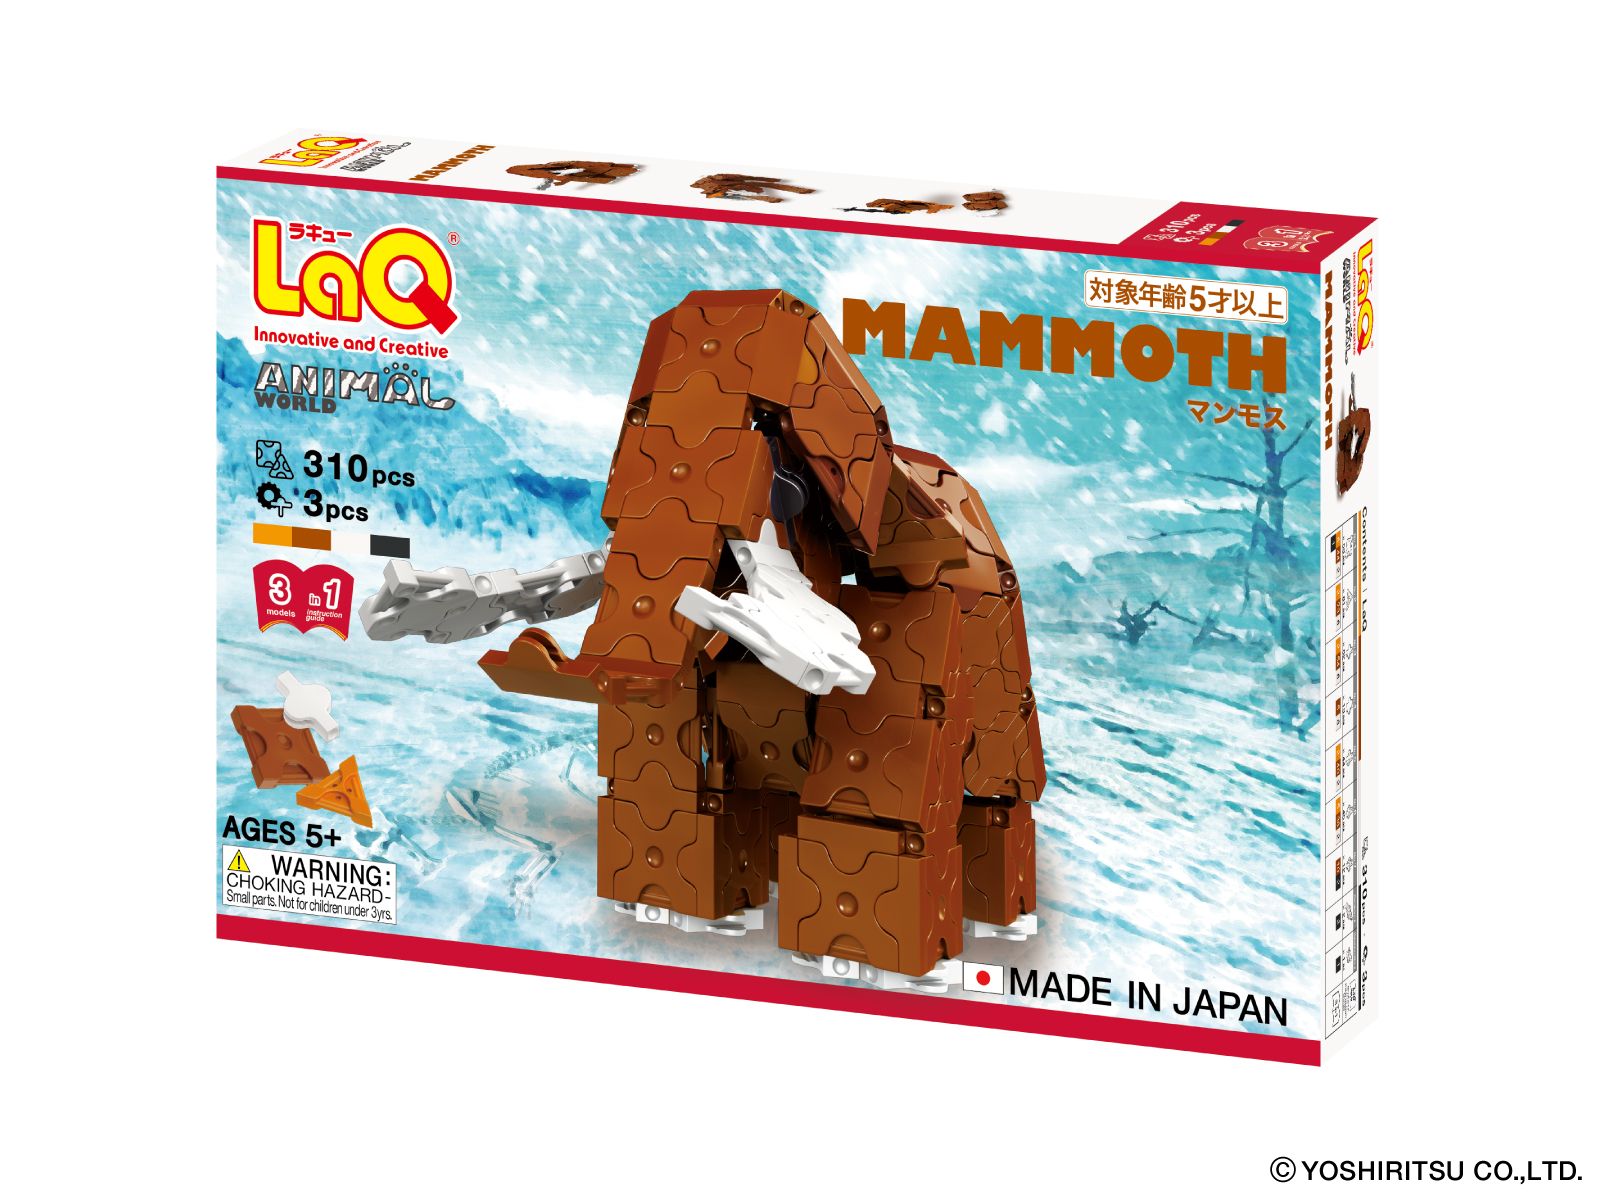  Bộ xếp hình sáng tạo LaQ Animal World MAMMOTH - Chủ đề Thế giới Động vật (Voi ma mút) 310 mảnh ghép và 3 chi tiết Hamacron 